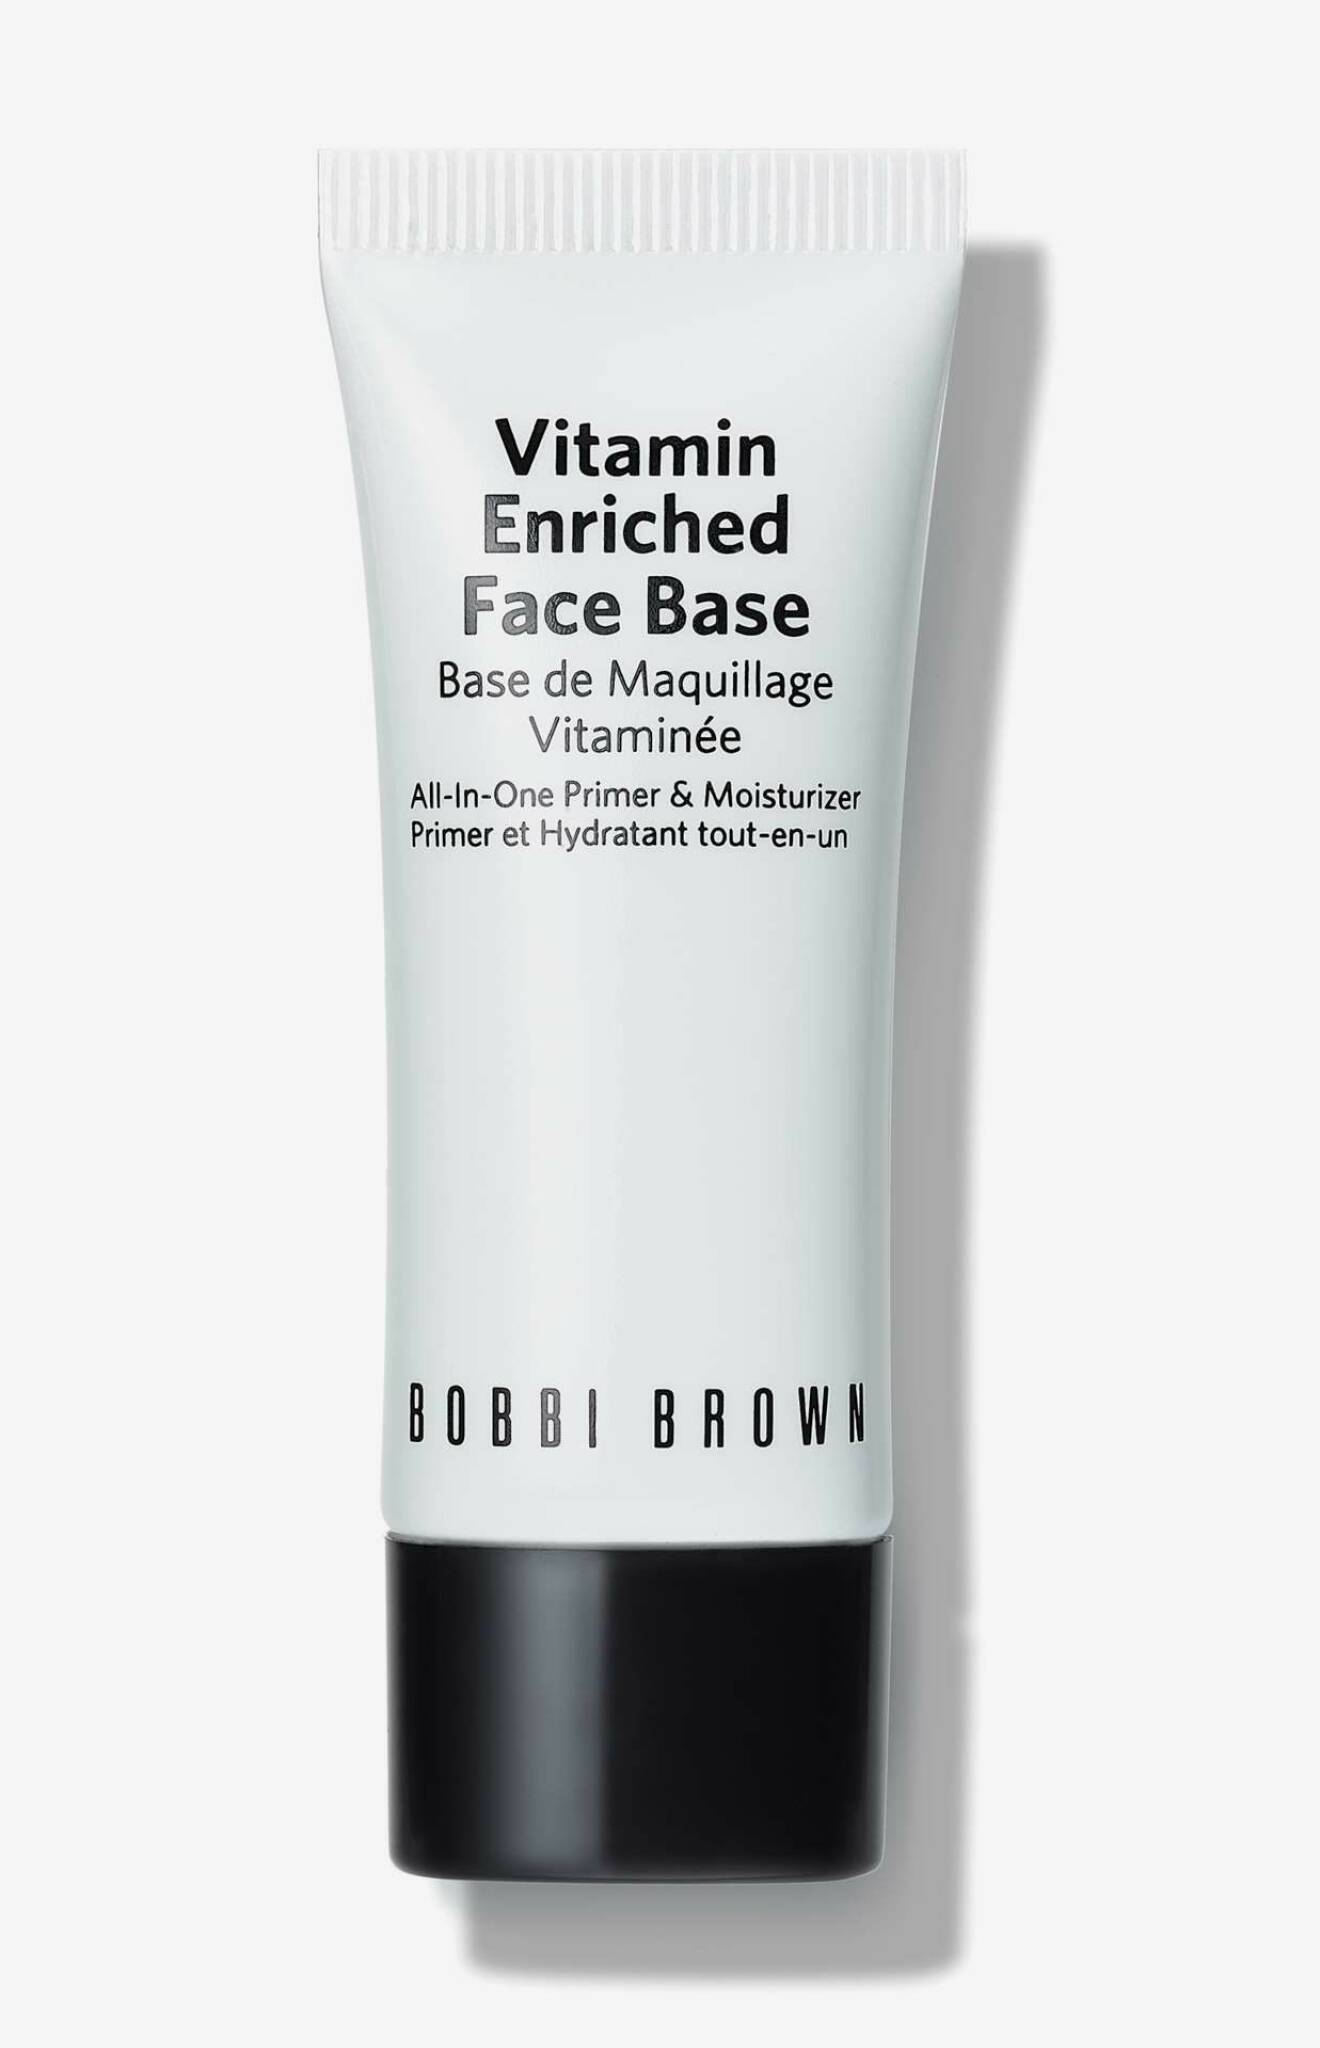 Primer för en perfekt bas är Vitamin enriched face base från Bobbi Brown.